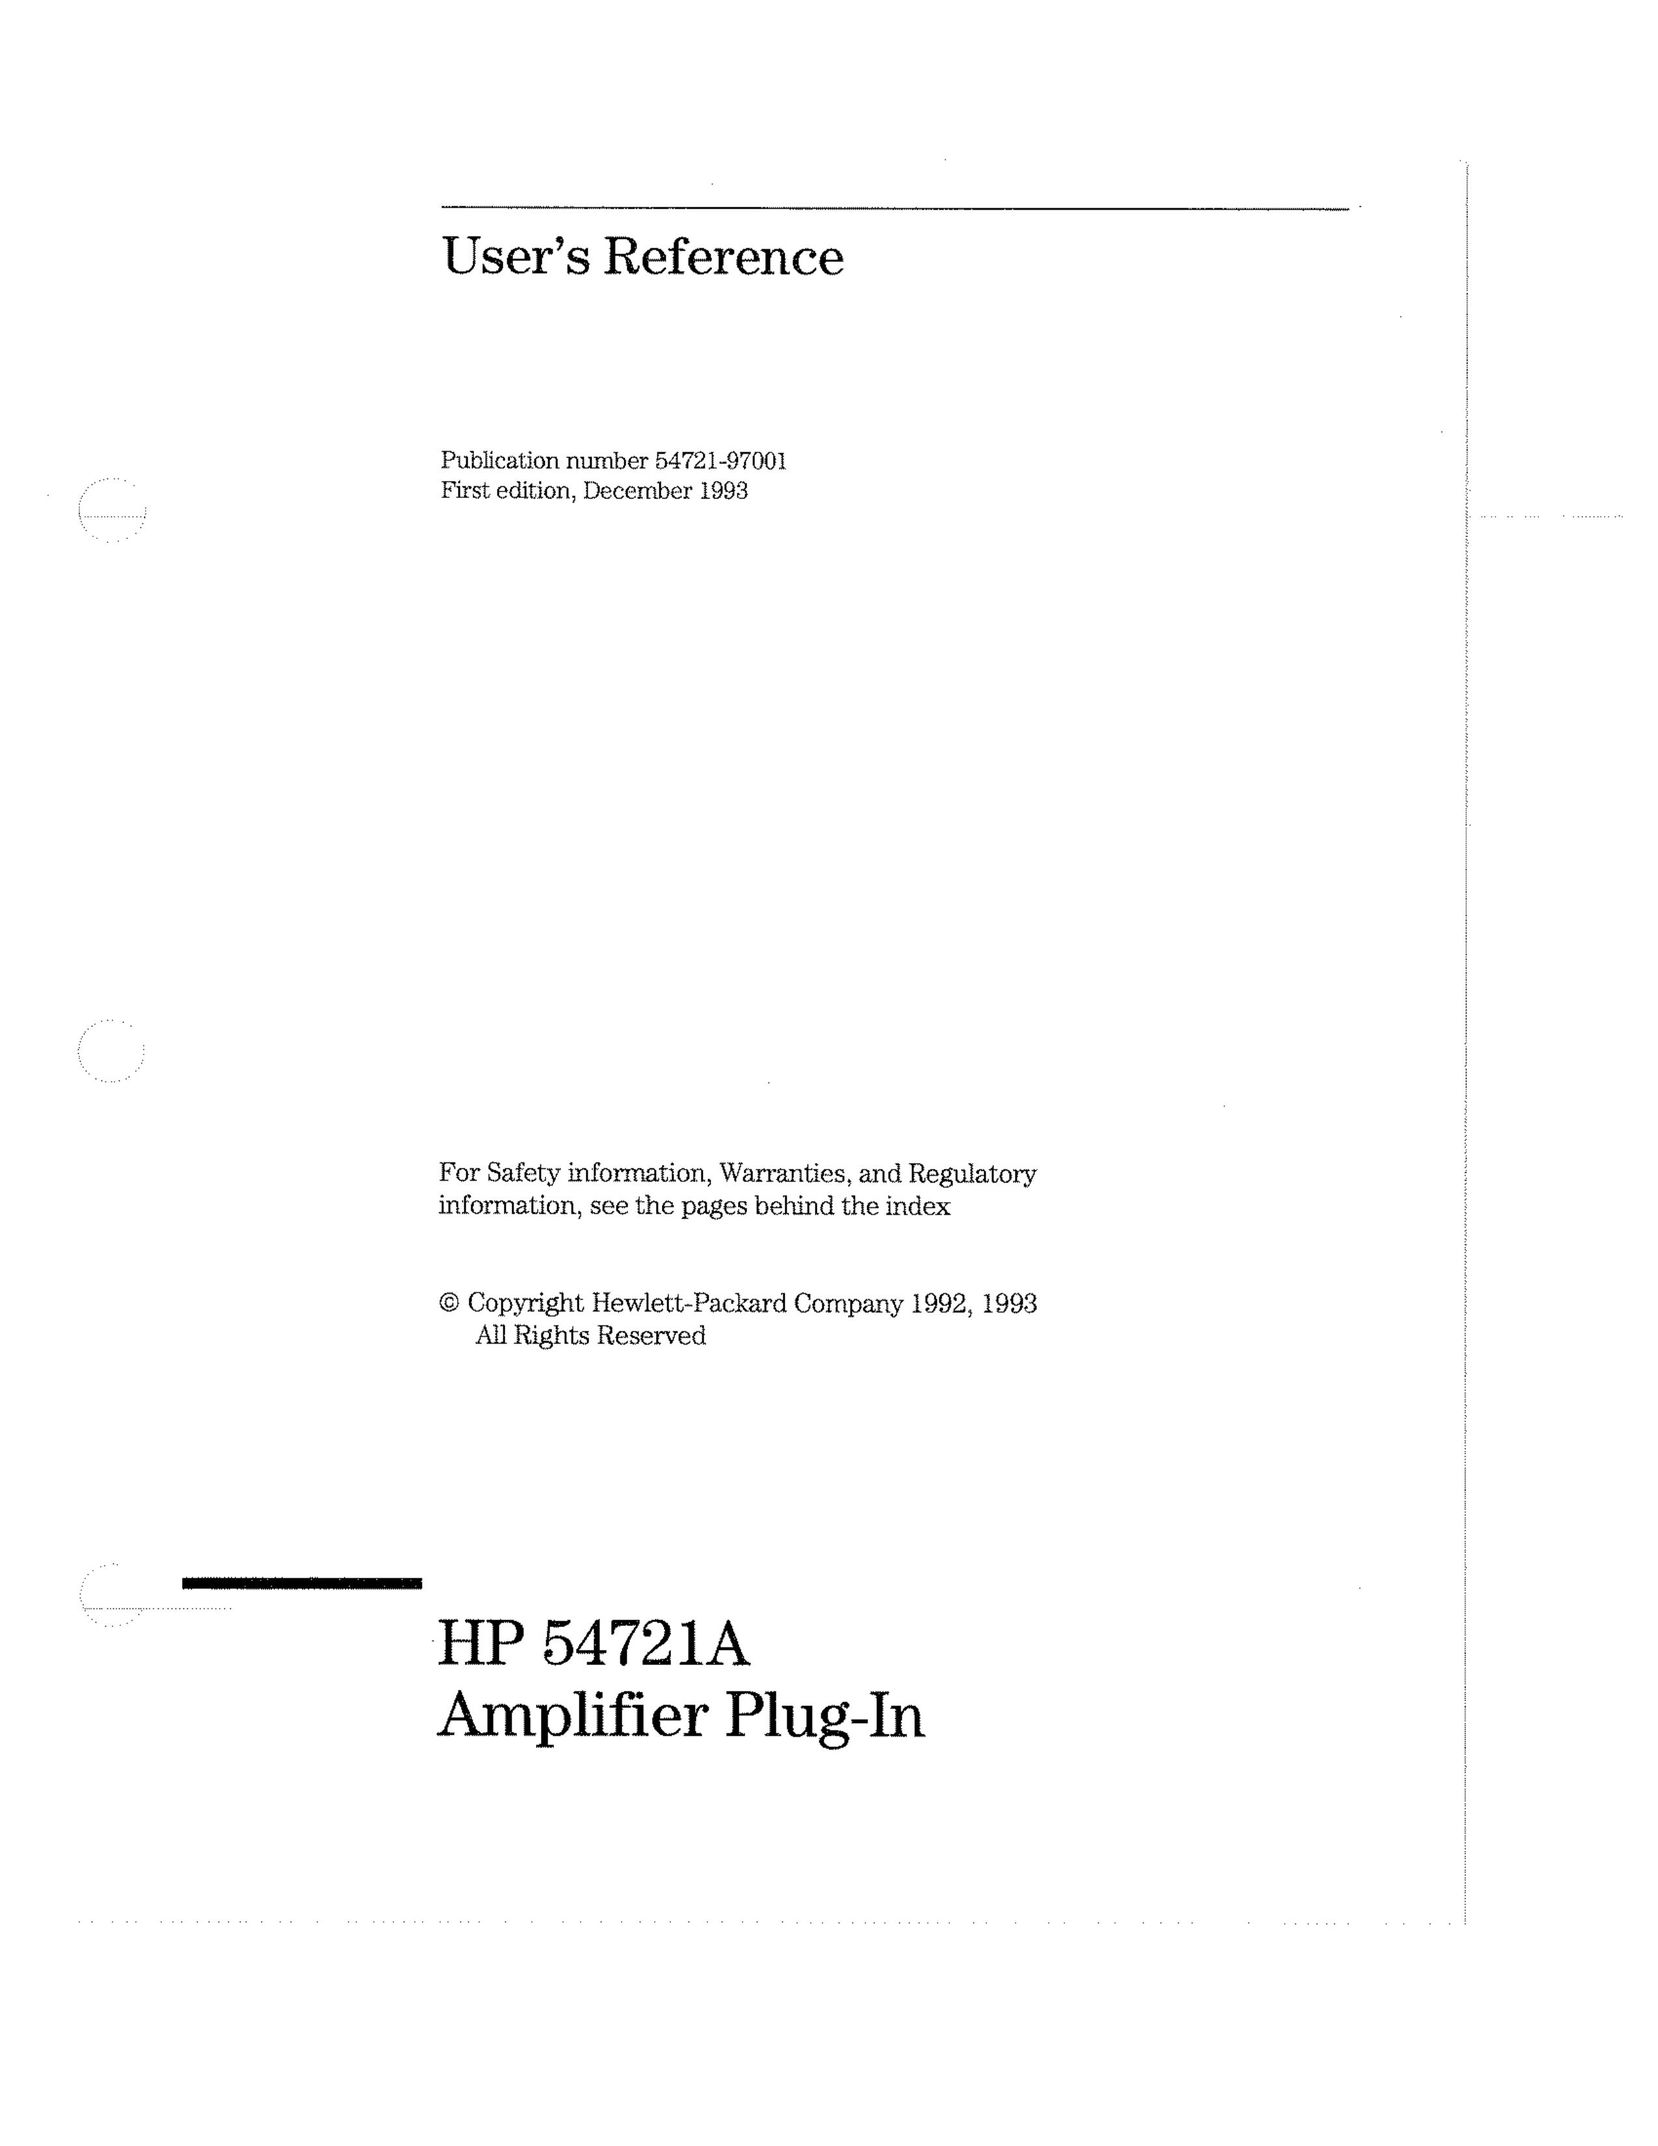 HP (Hewlett-Packard) HP54721A Car Amplifier User Manual